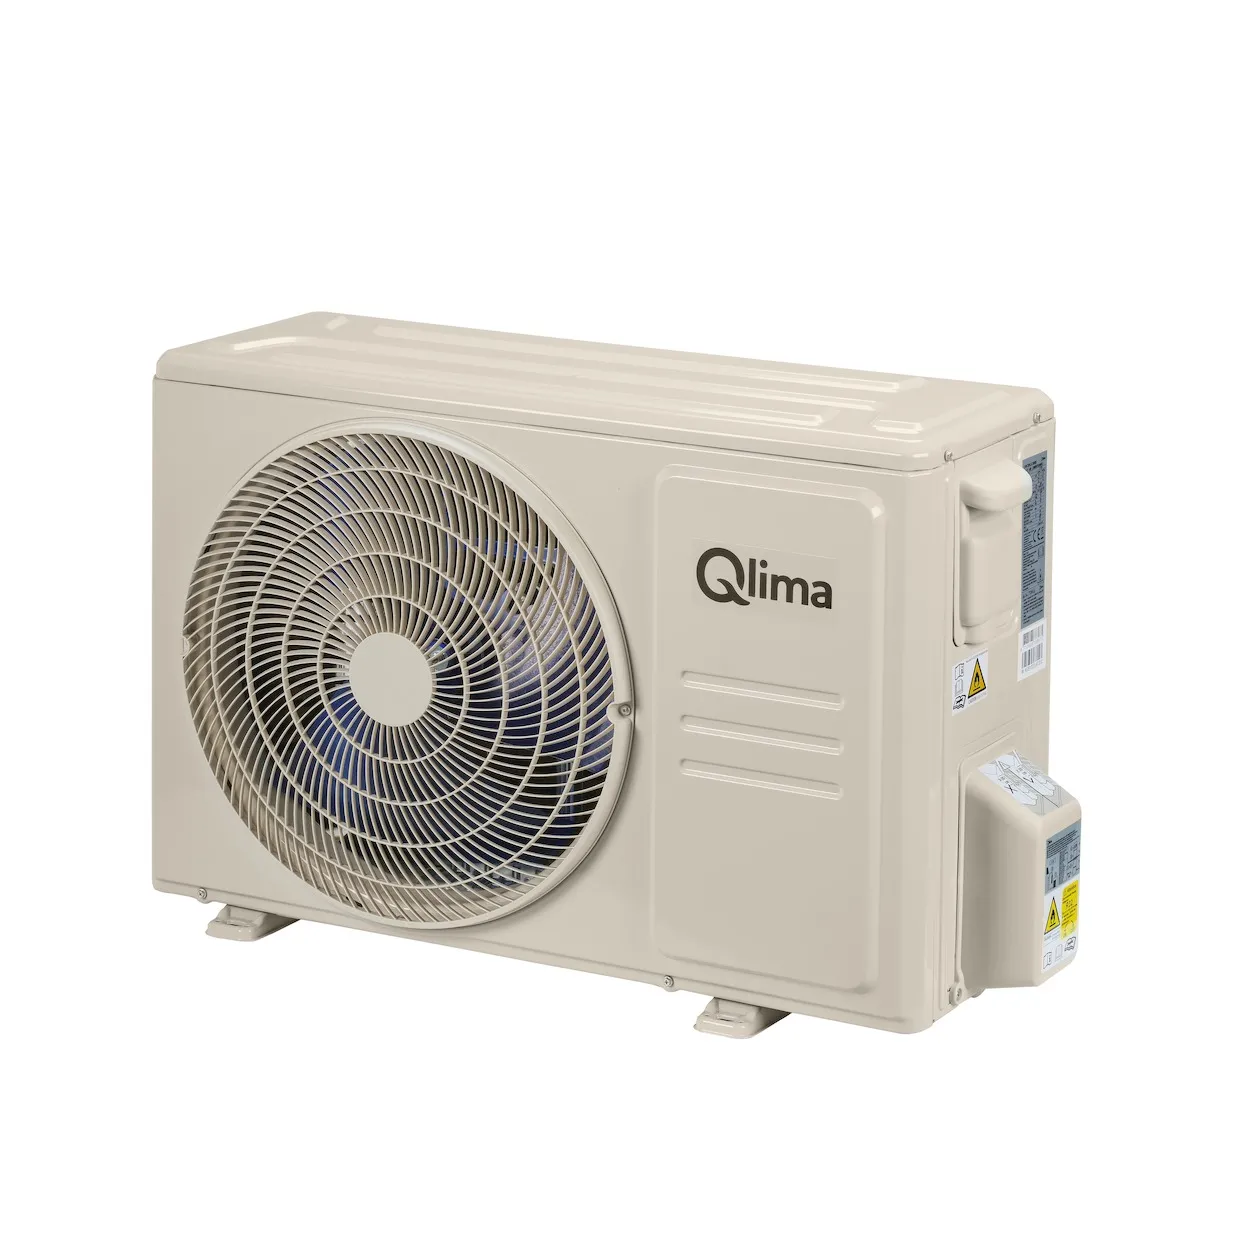 Qlima SC 6035 compleet (met snelkoppeling)